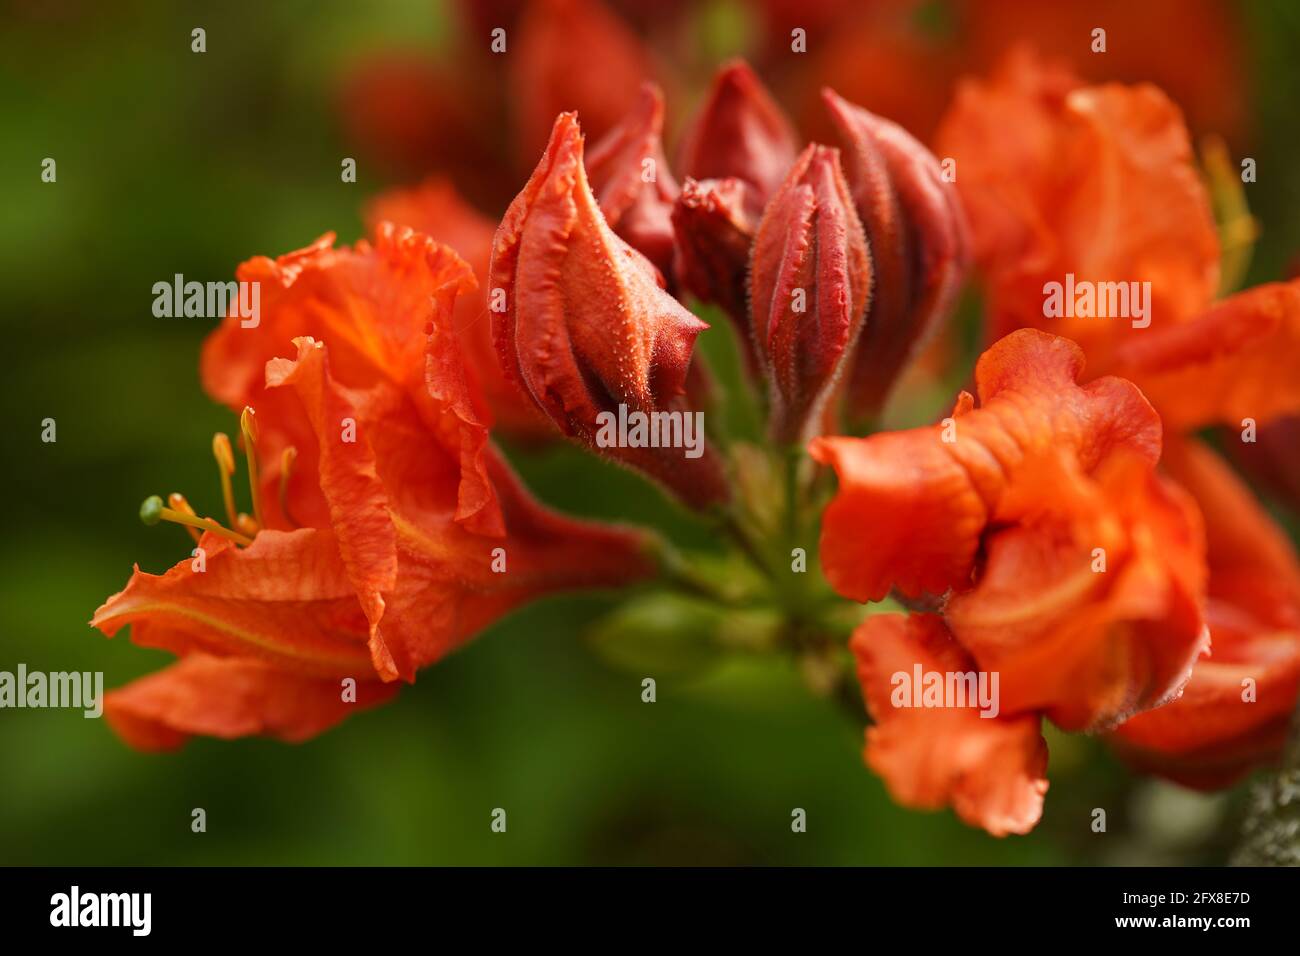 Primo piano di un fiore azalea rosso-arancio Foto Stock